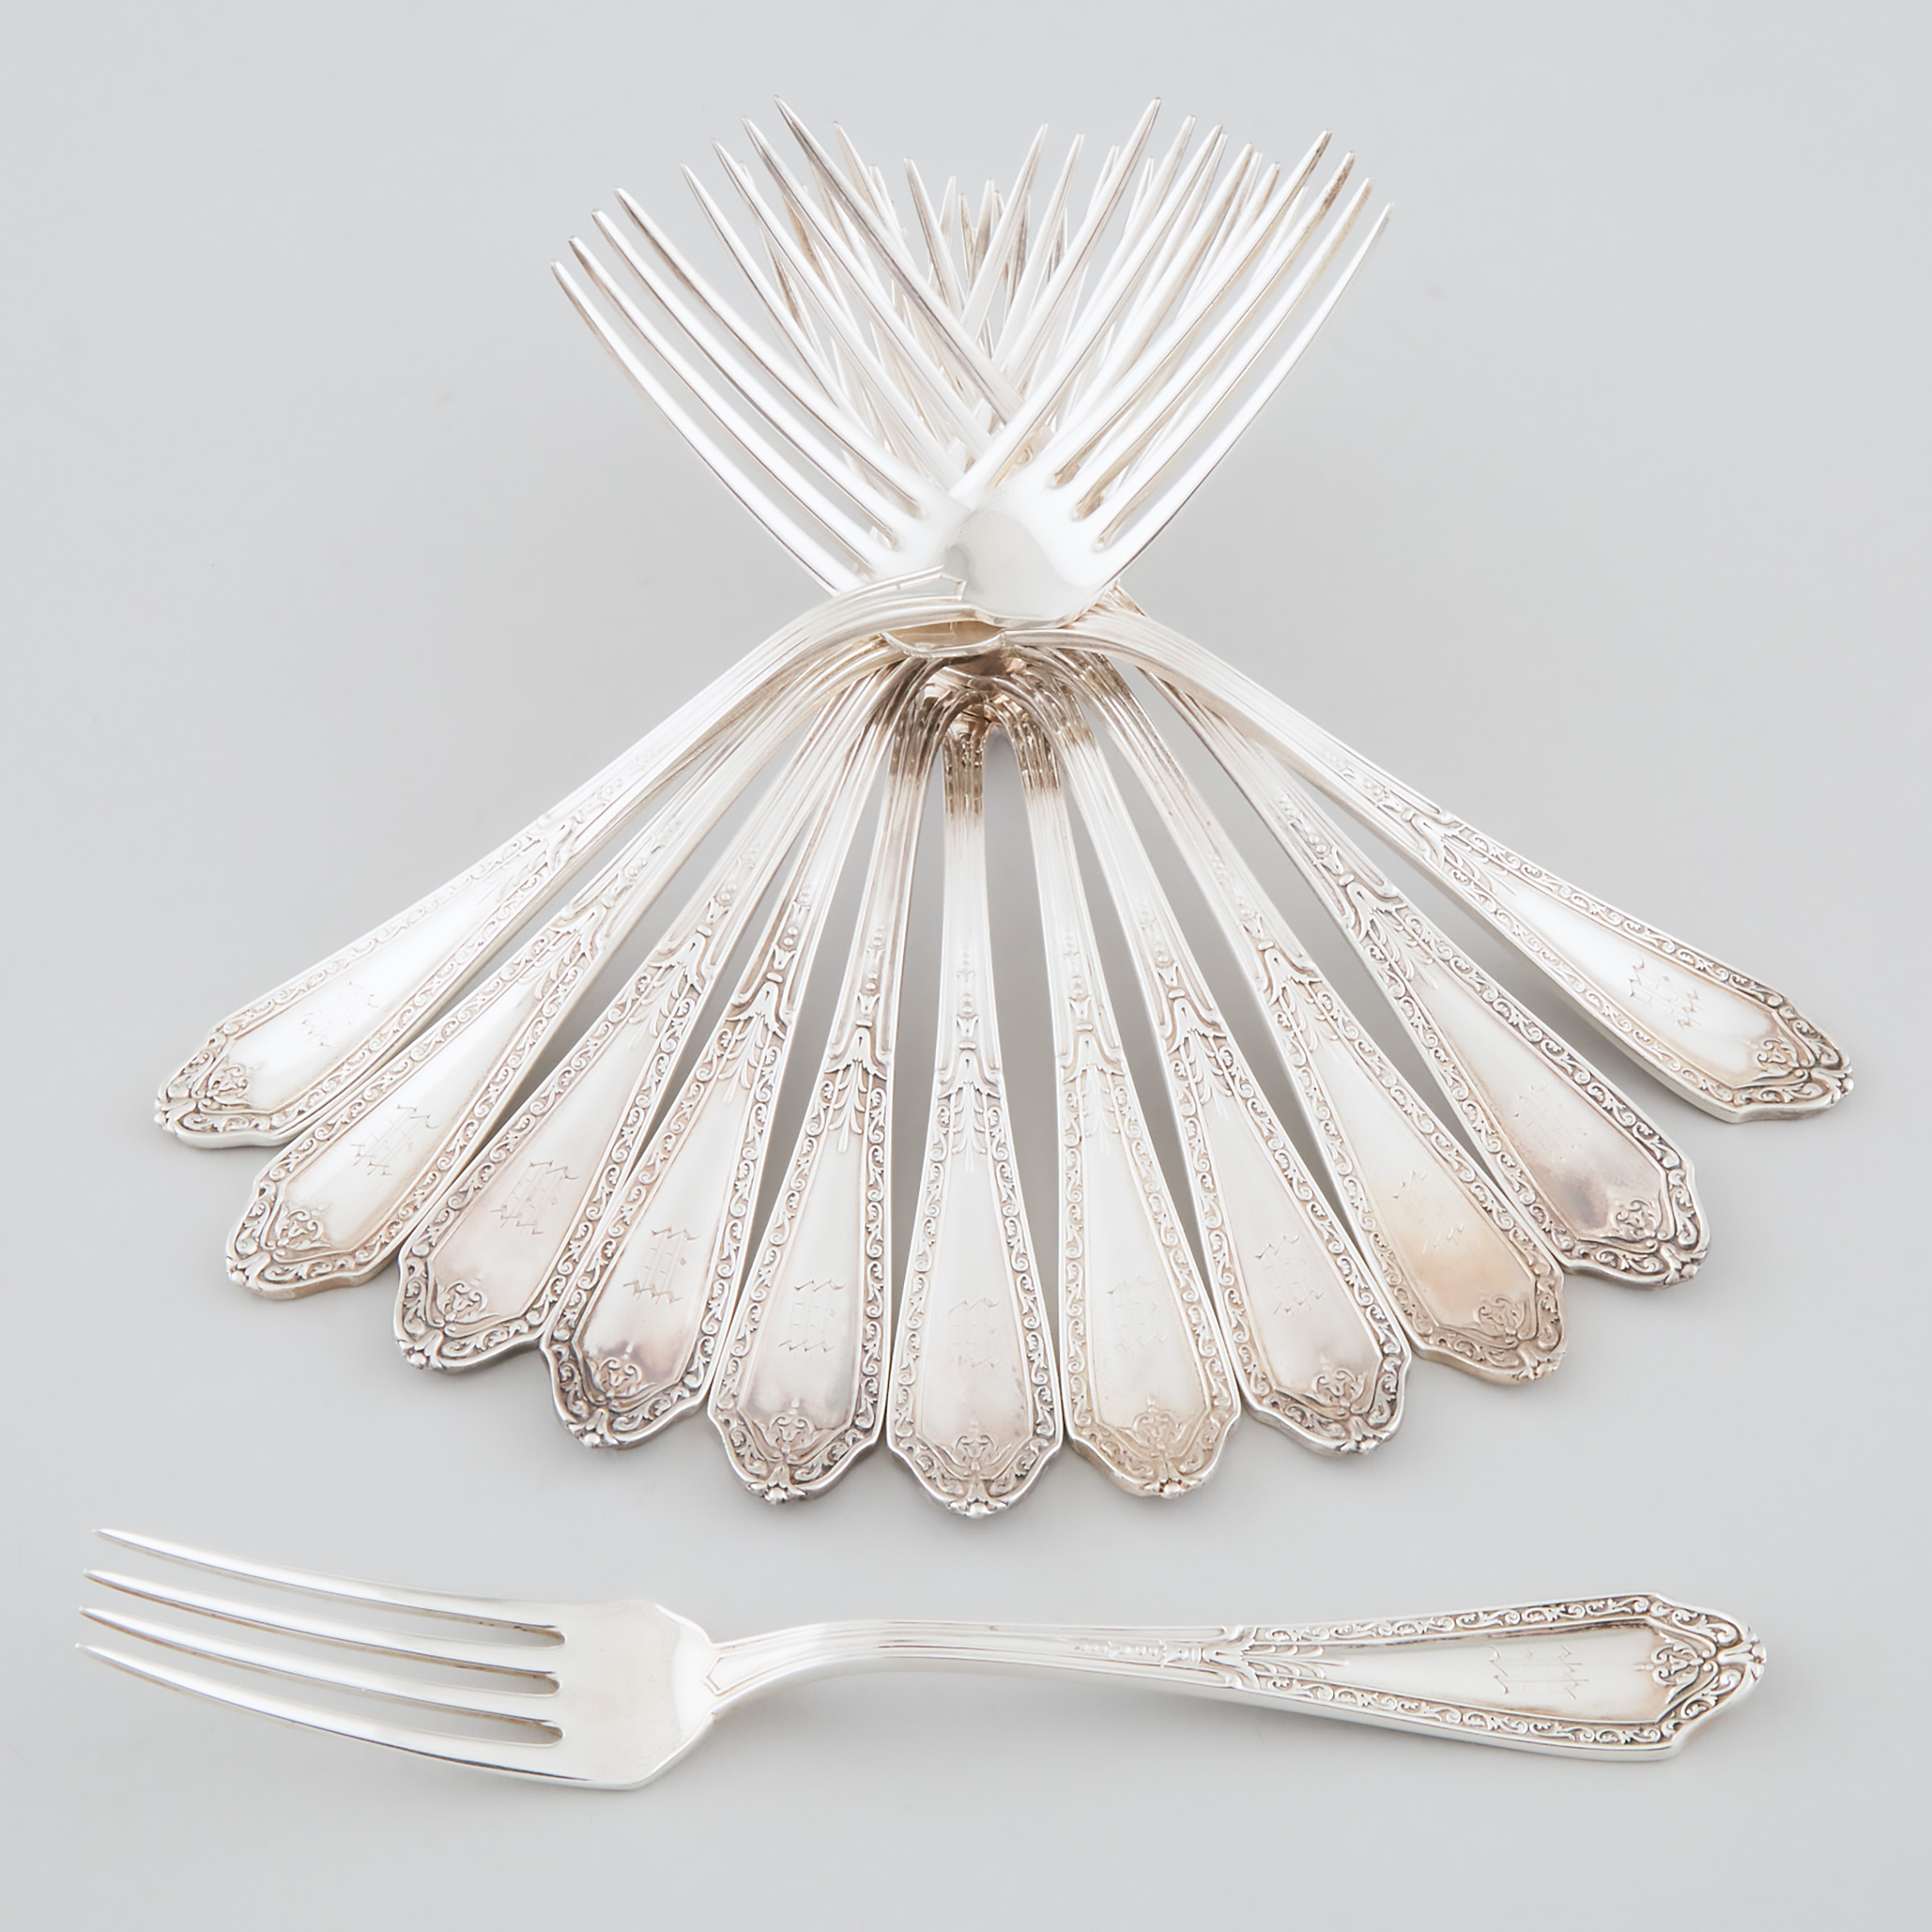 Twelve Canadian Silver Dinner Forks  2a565c